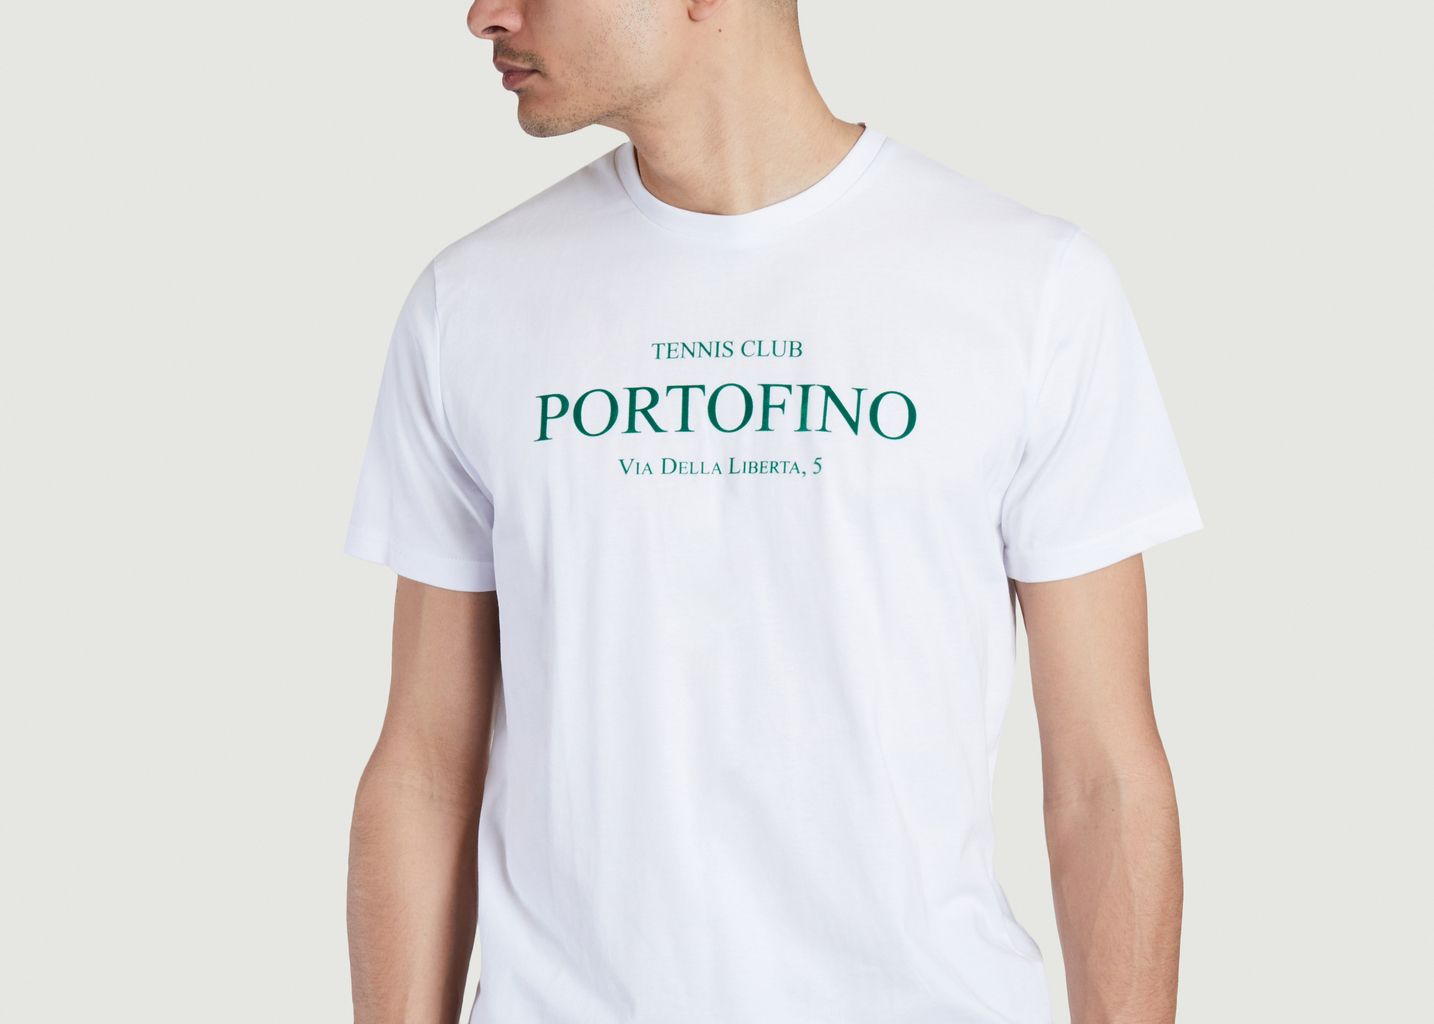 Portofino Tennis Club Tshirt - Harmony